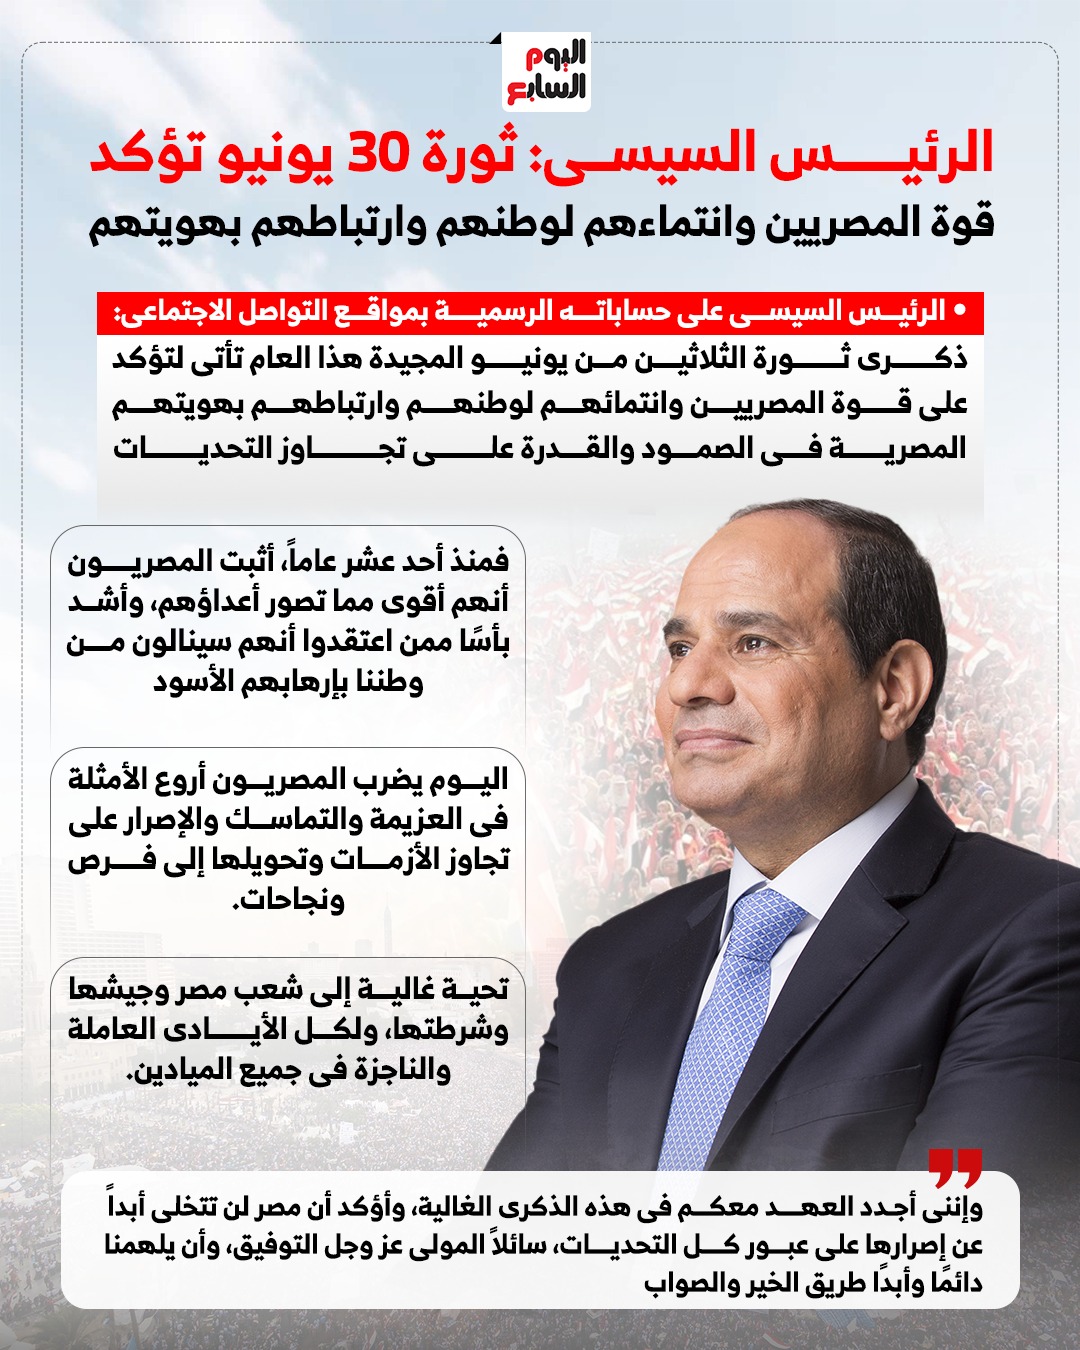 الرئيس السيسى  ثورة 30 يونيو تؤكد قوة المصريين وانتماءهم لوطنهم وارتباطهم بهويتهم